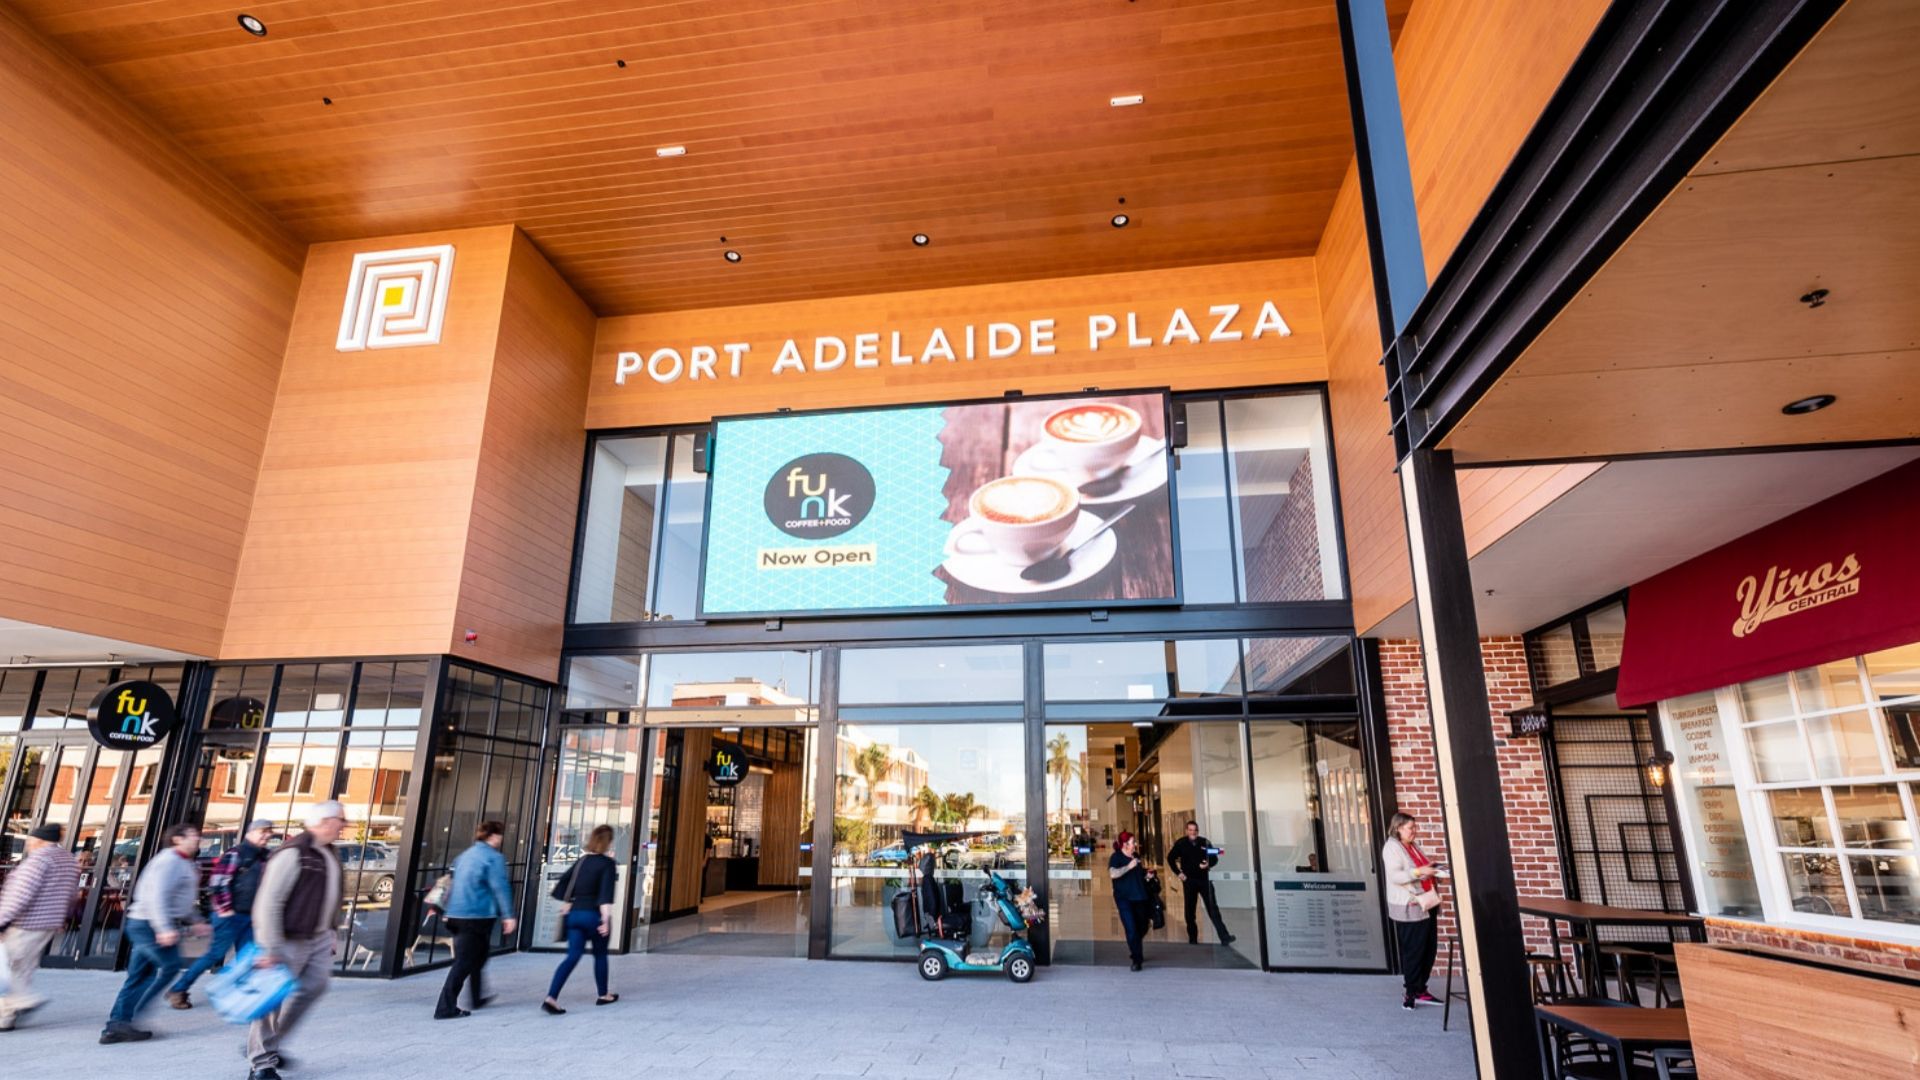 Port Adelaide Plaza - Entry